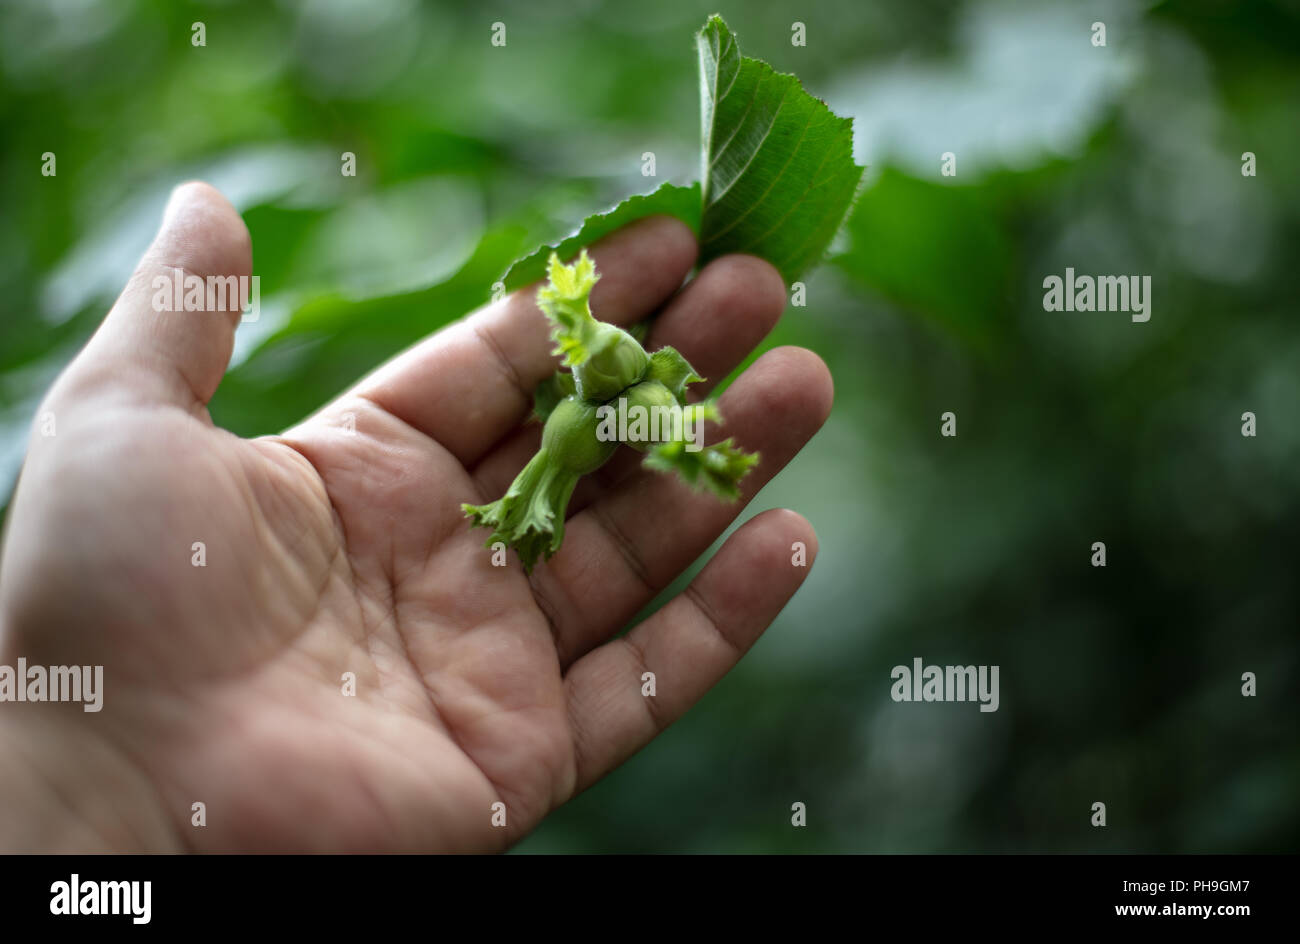 Mano umana tenendo un ramo con tre nocciole verde. Nocciola bush (nocciola), nocciole immaturi. Messa a fuoco selettiva Foto Stock